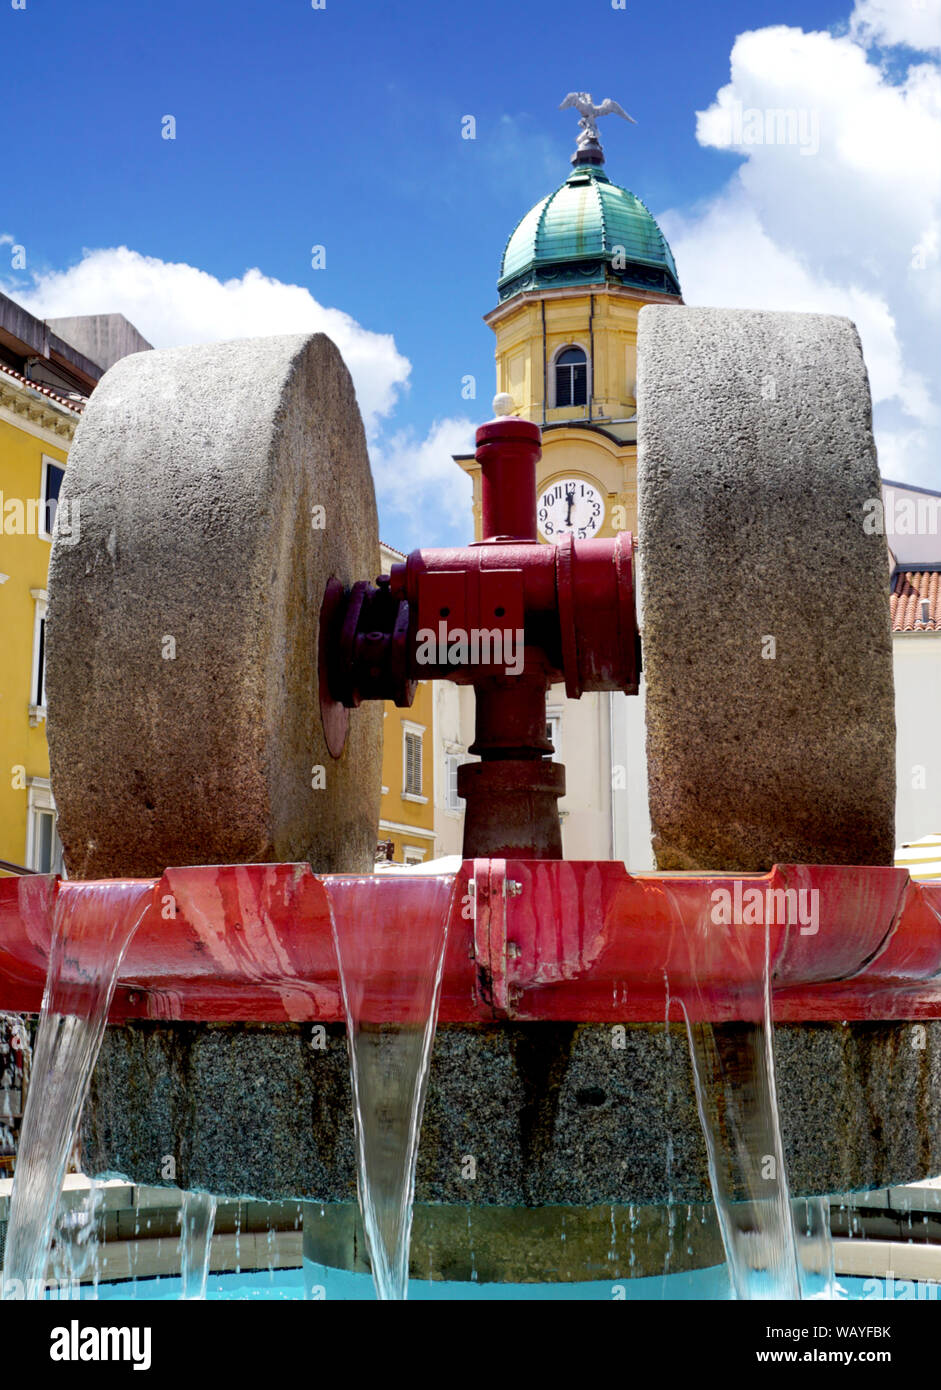 Macina in una fontana e un orologio di città su un monumento culturale in background. Patrimonio culturale e tradizionale della città croata di Rijeka Foto Stock